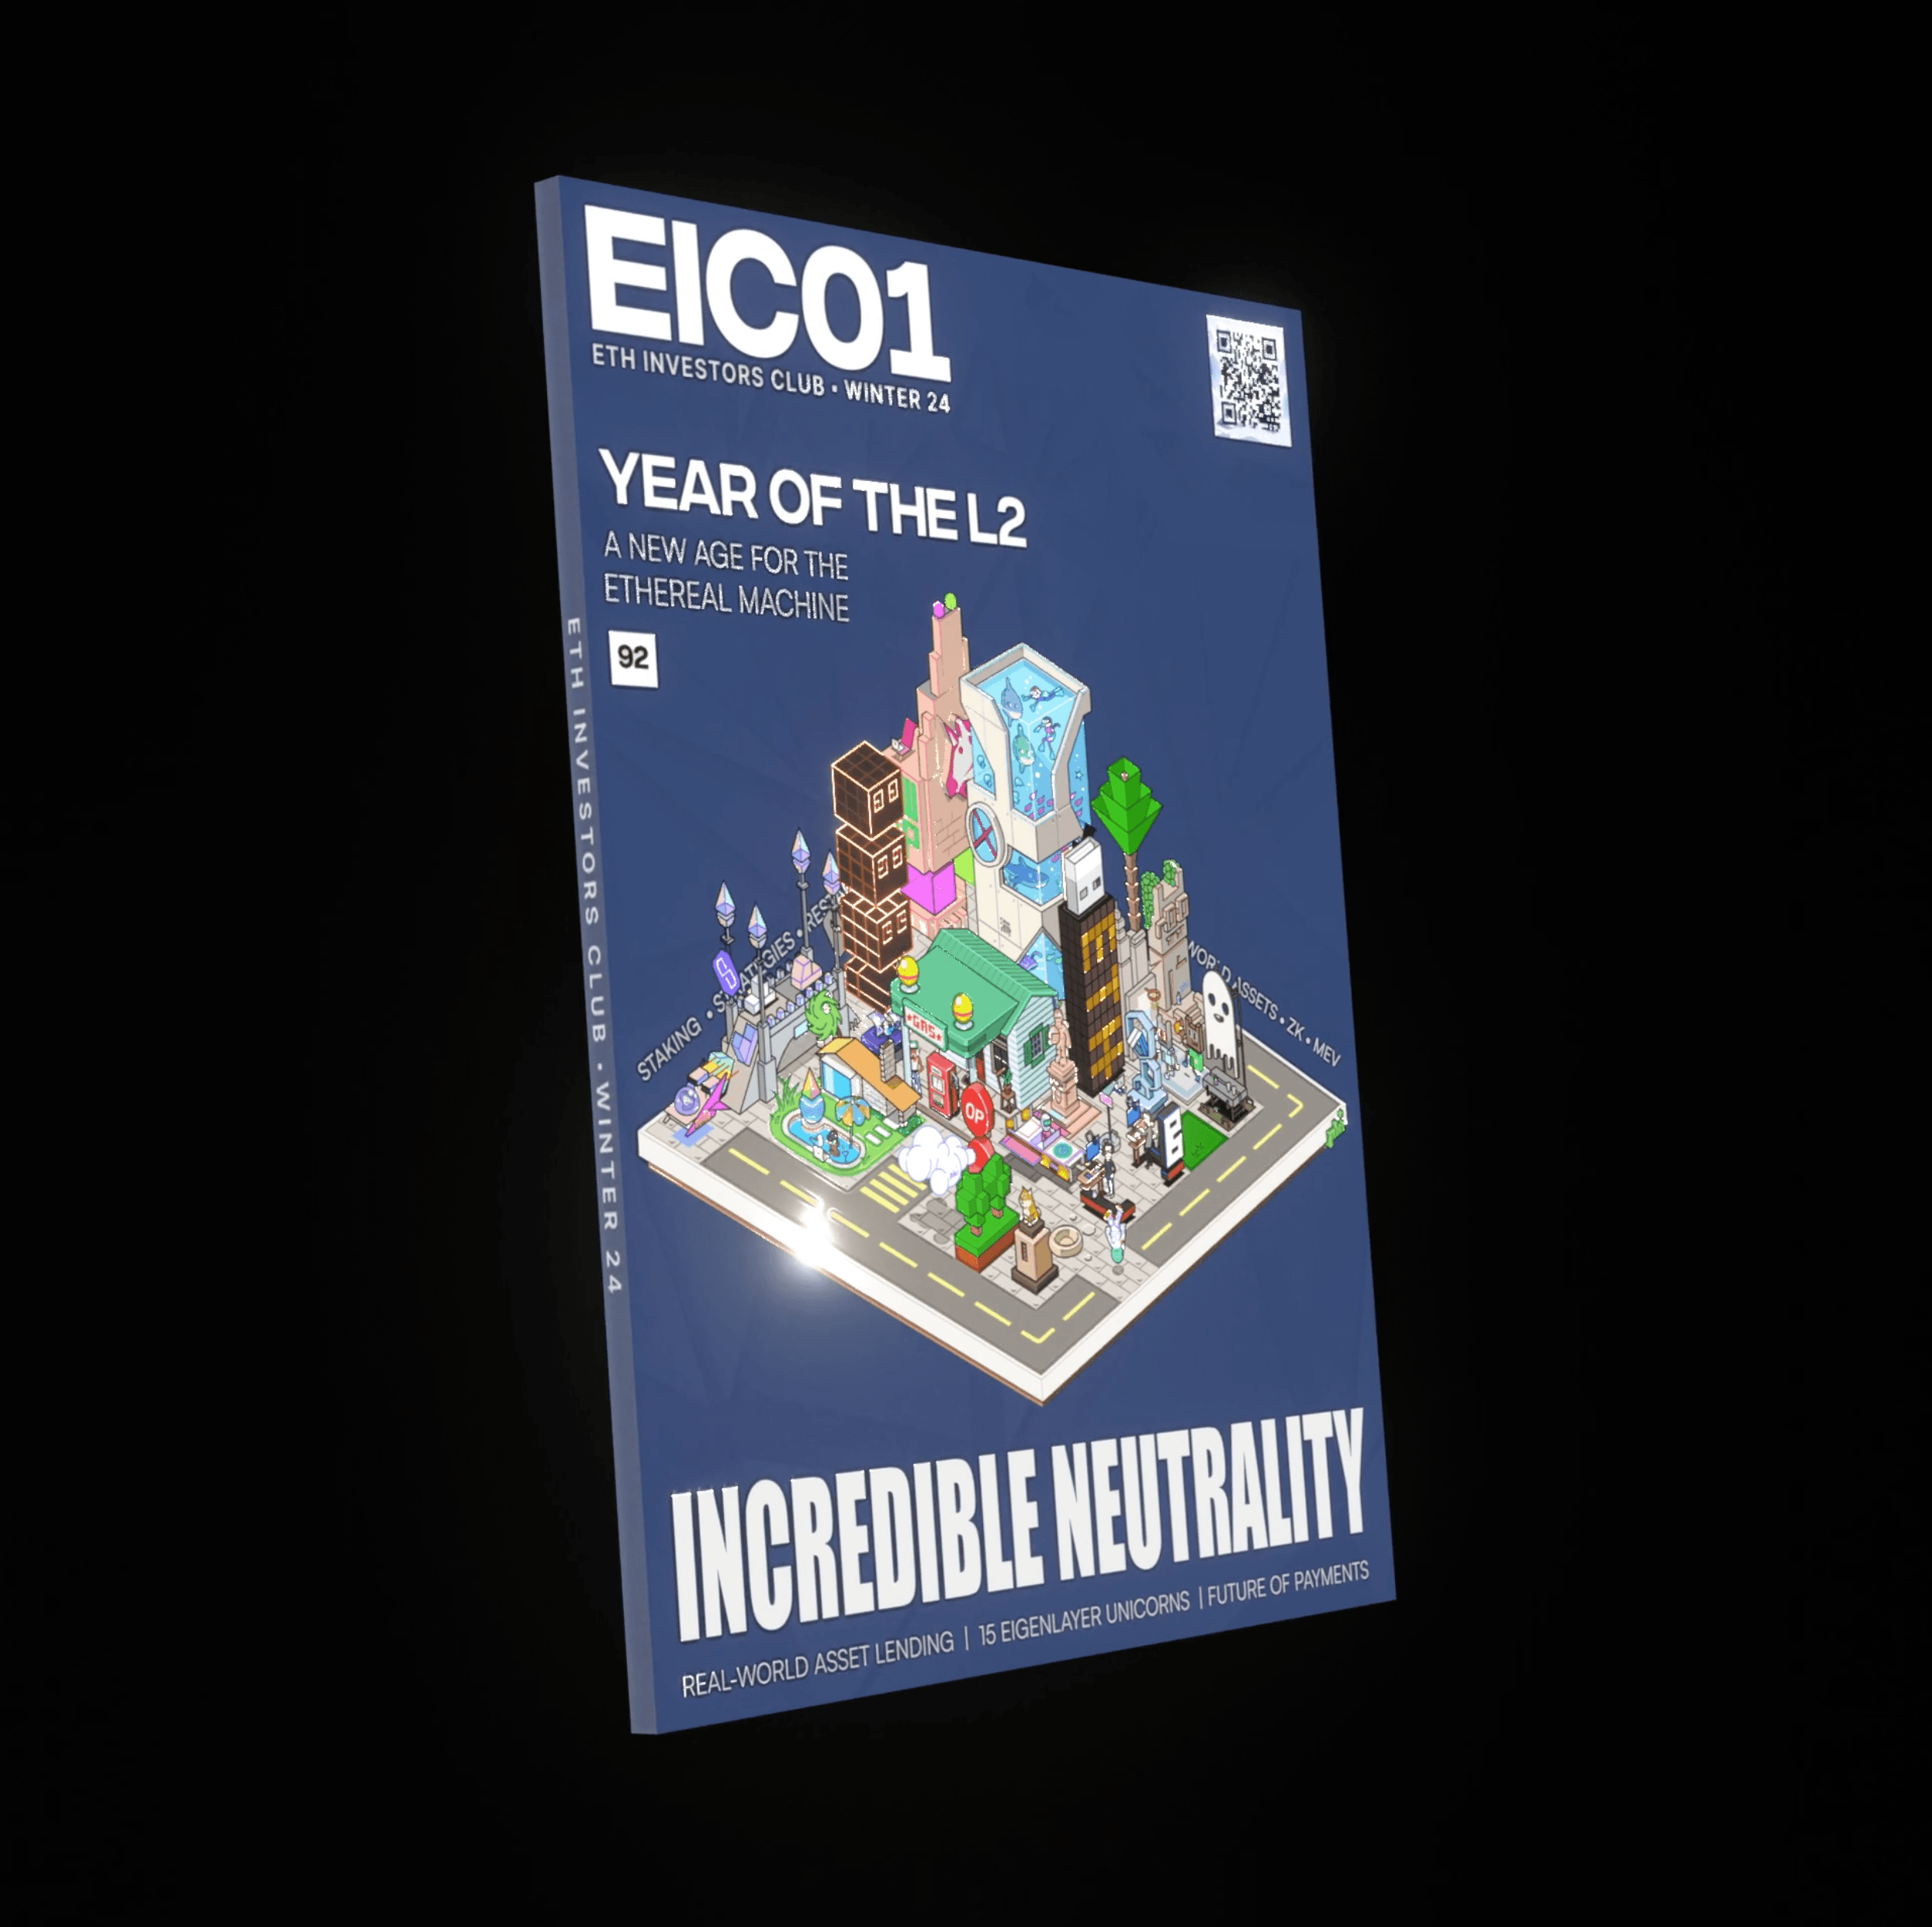 EIC01 | Winter 24 Digital